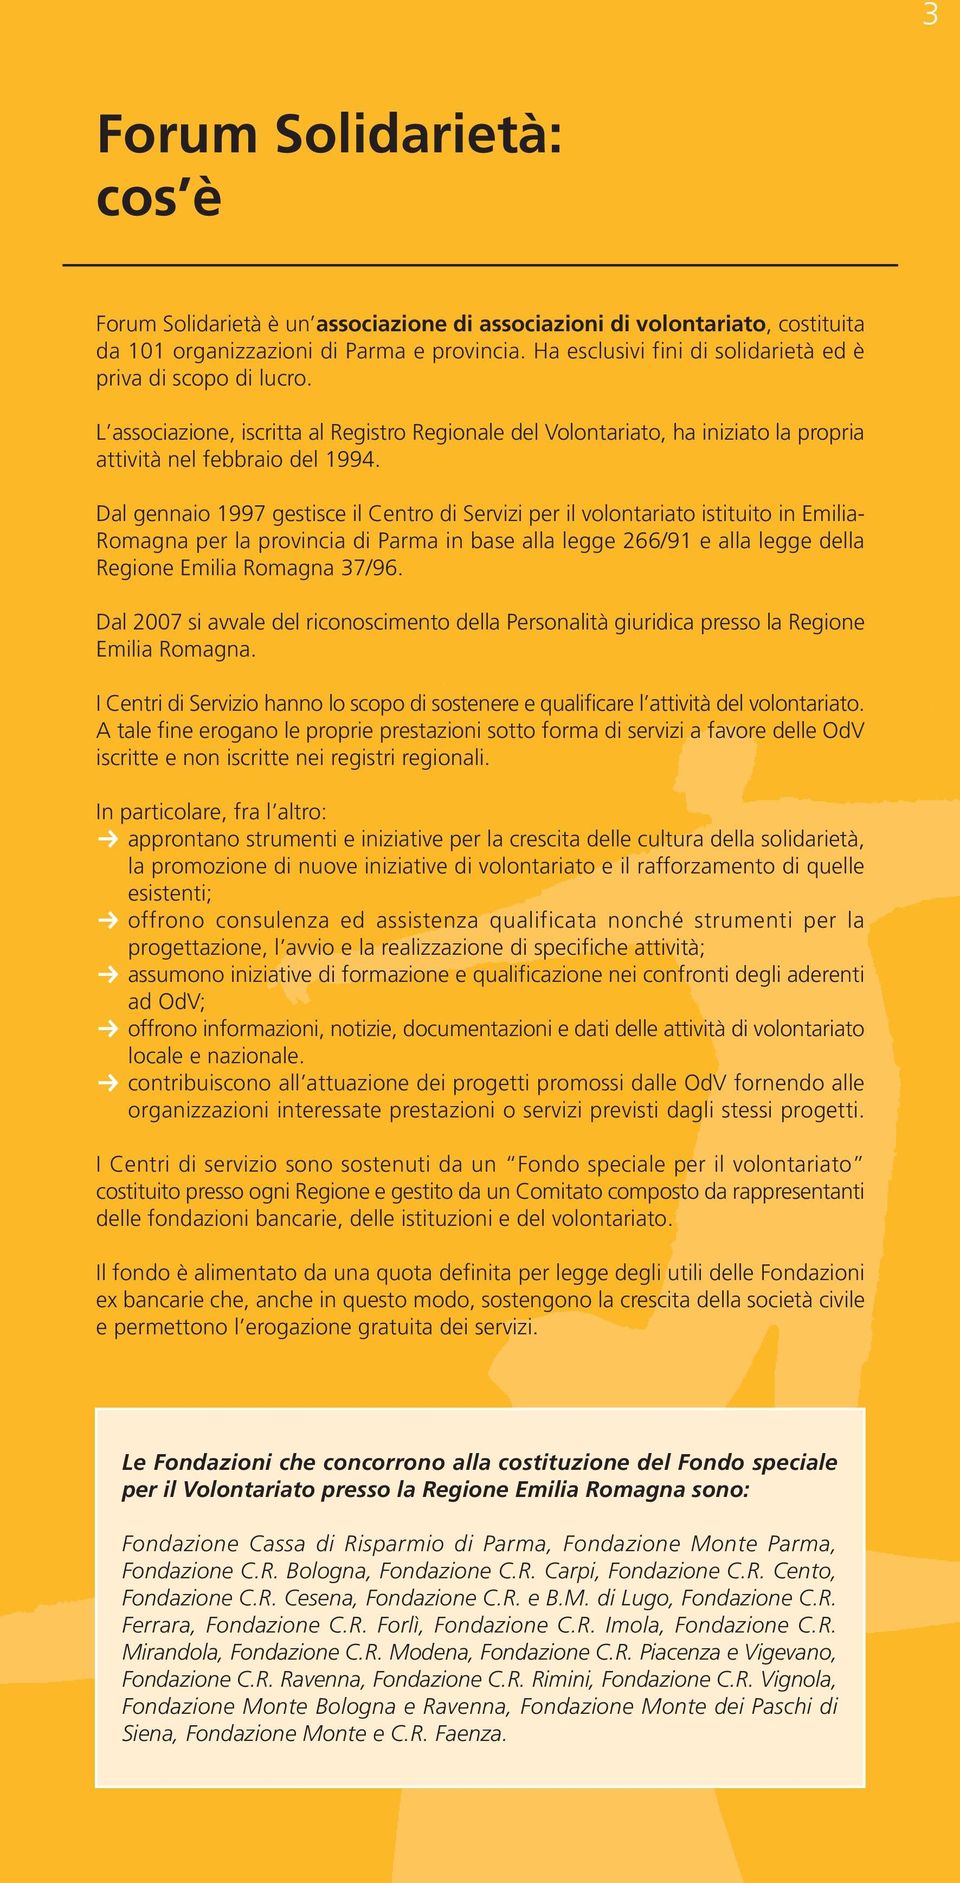 Dal gennaio 1997 gestisce il Centro di Servizi per il volontariato istituito in Emilia- Romagna per la provincia di Parma in base alla legge 266/91 e alla legge della Regione Emilia Romagna 37/96.